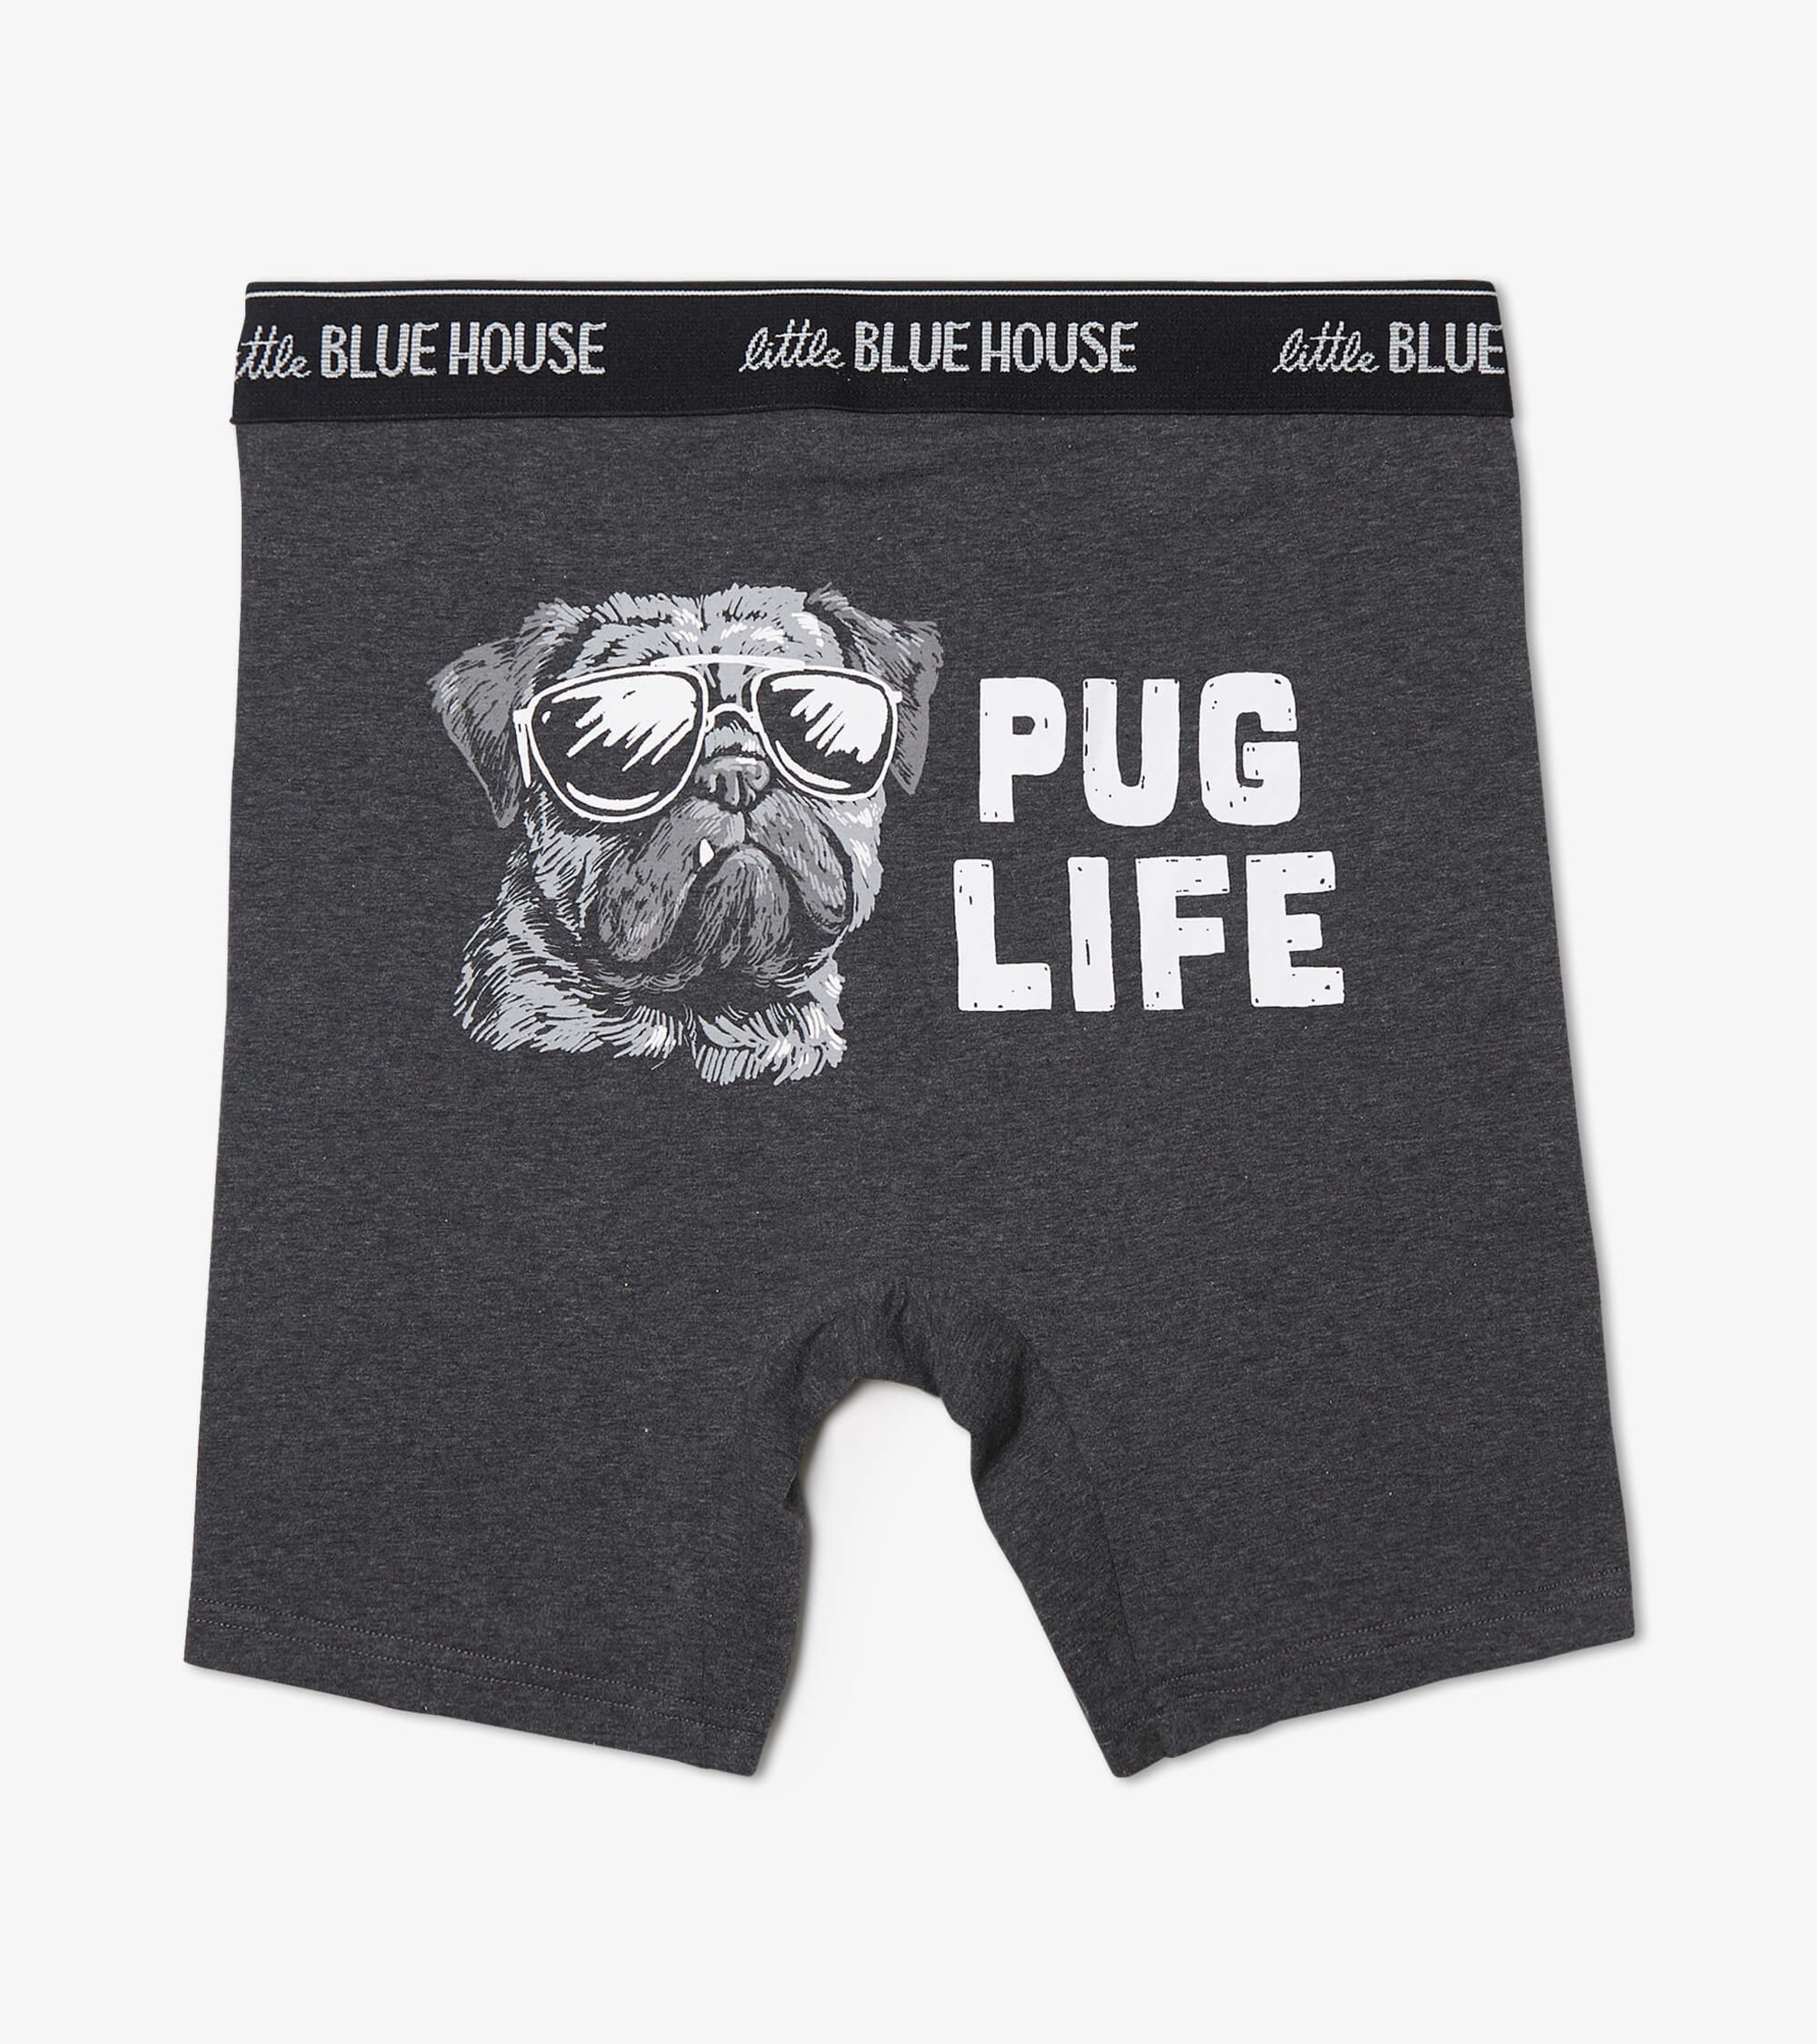 Pug Life Men's Boxer Briefs - Little Blue House US